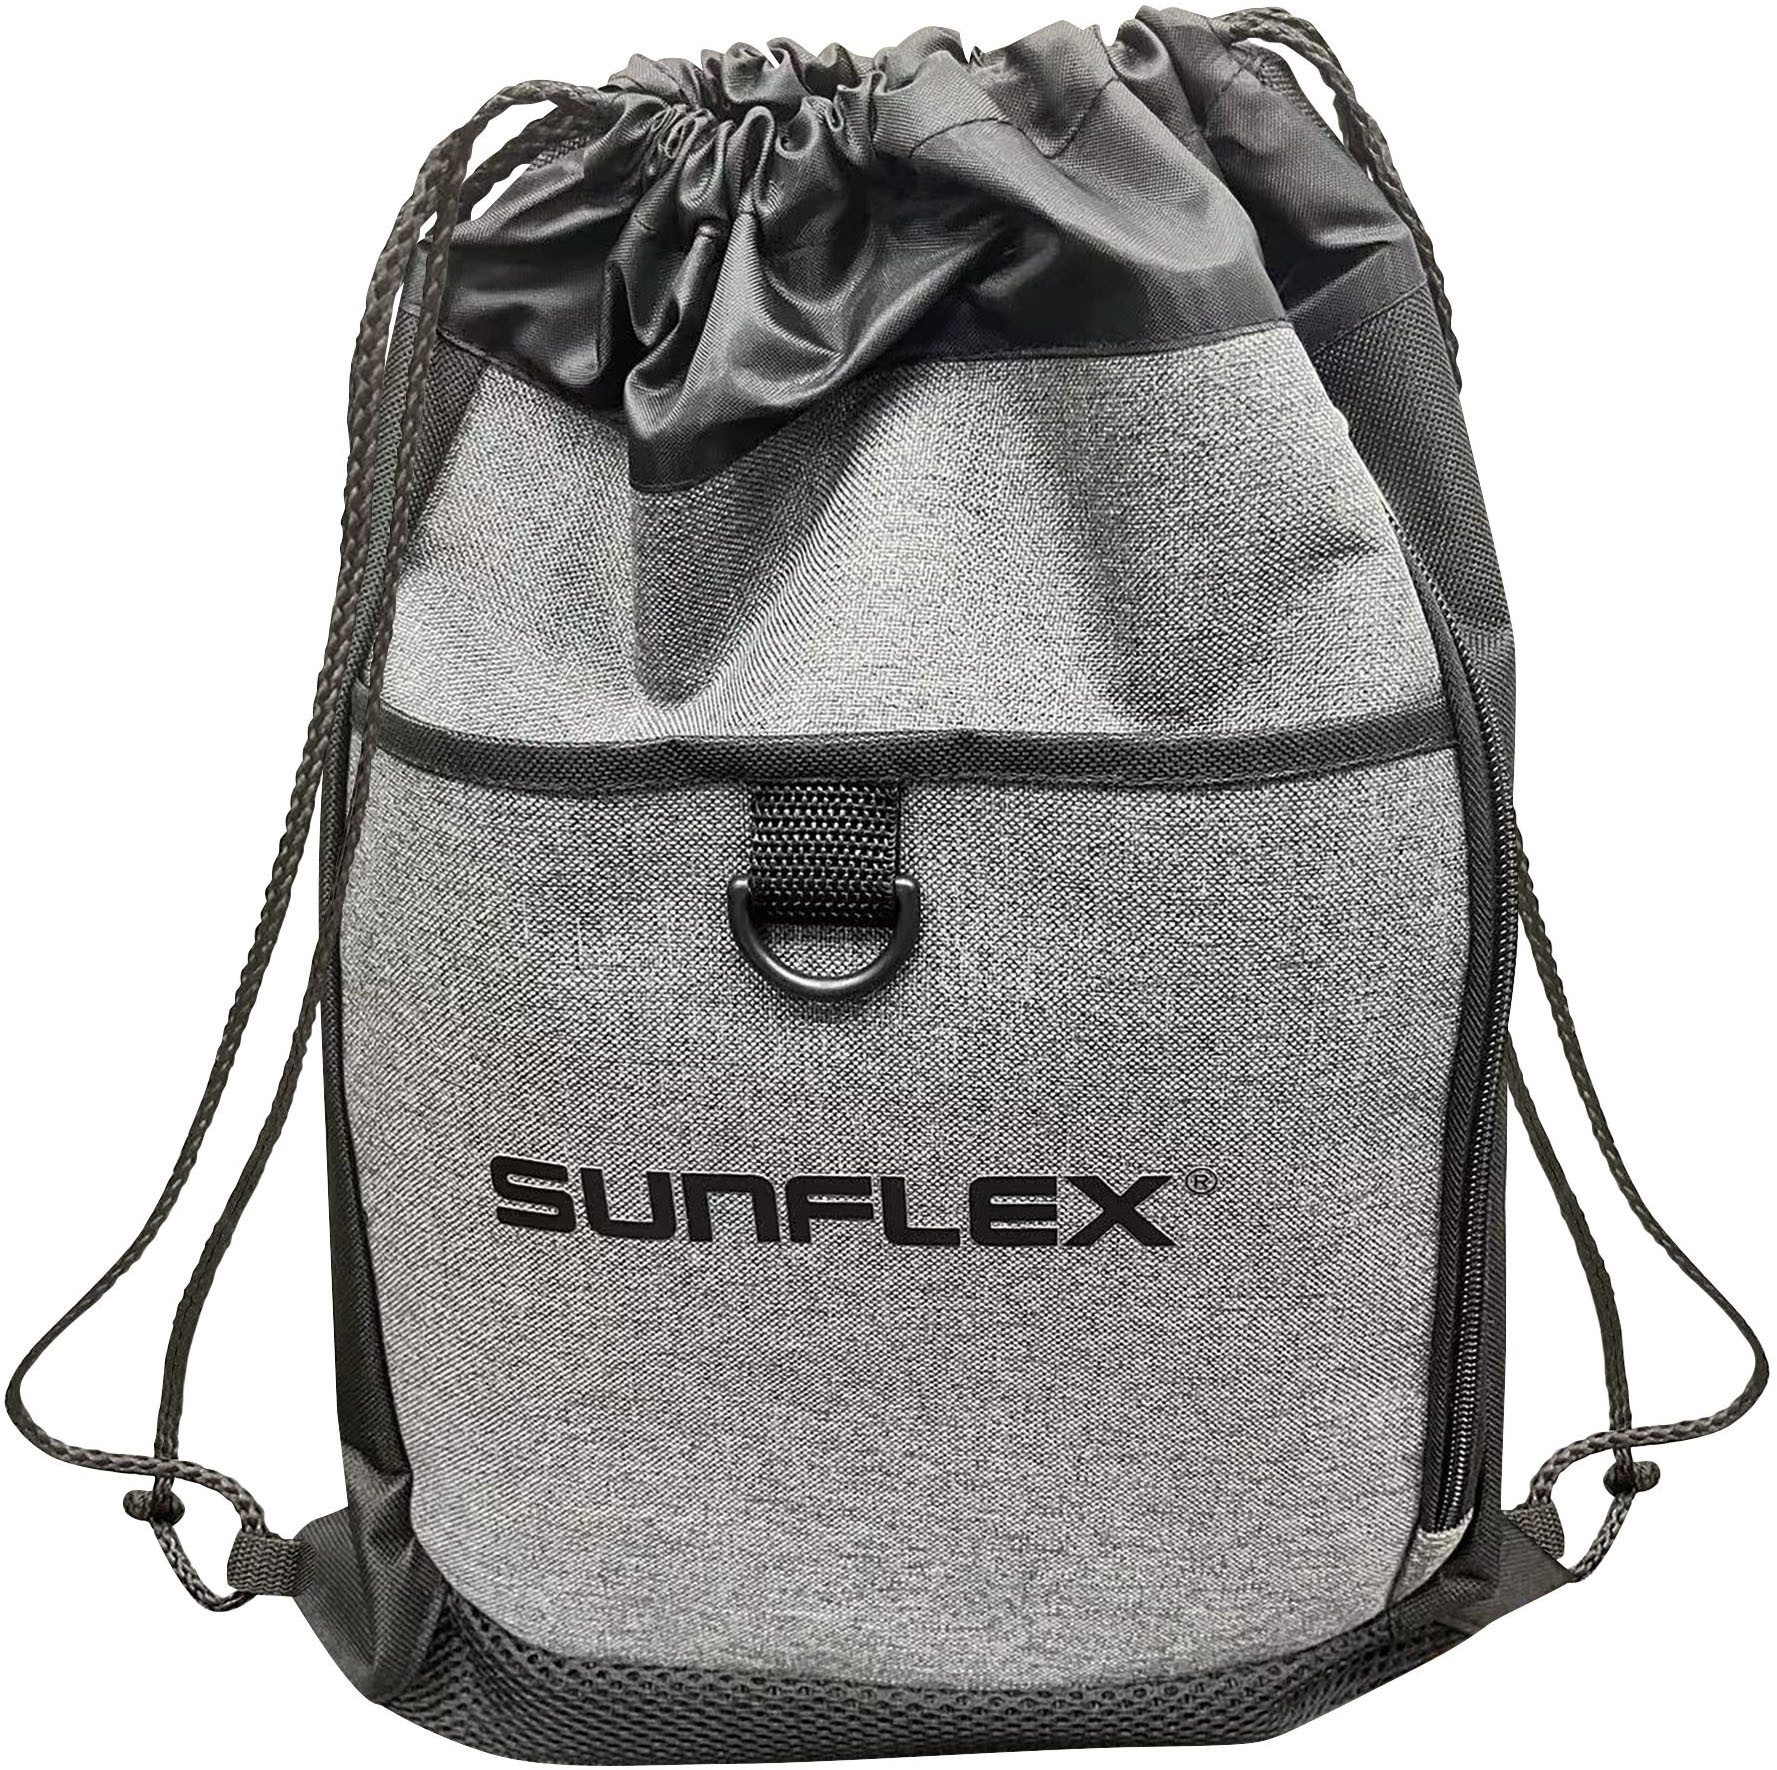 Sunflex Turnbeutel Gym Bag, Sportbeutel für Sport & Freizeit, Turnbeutel, Tasche